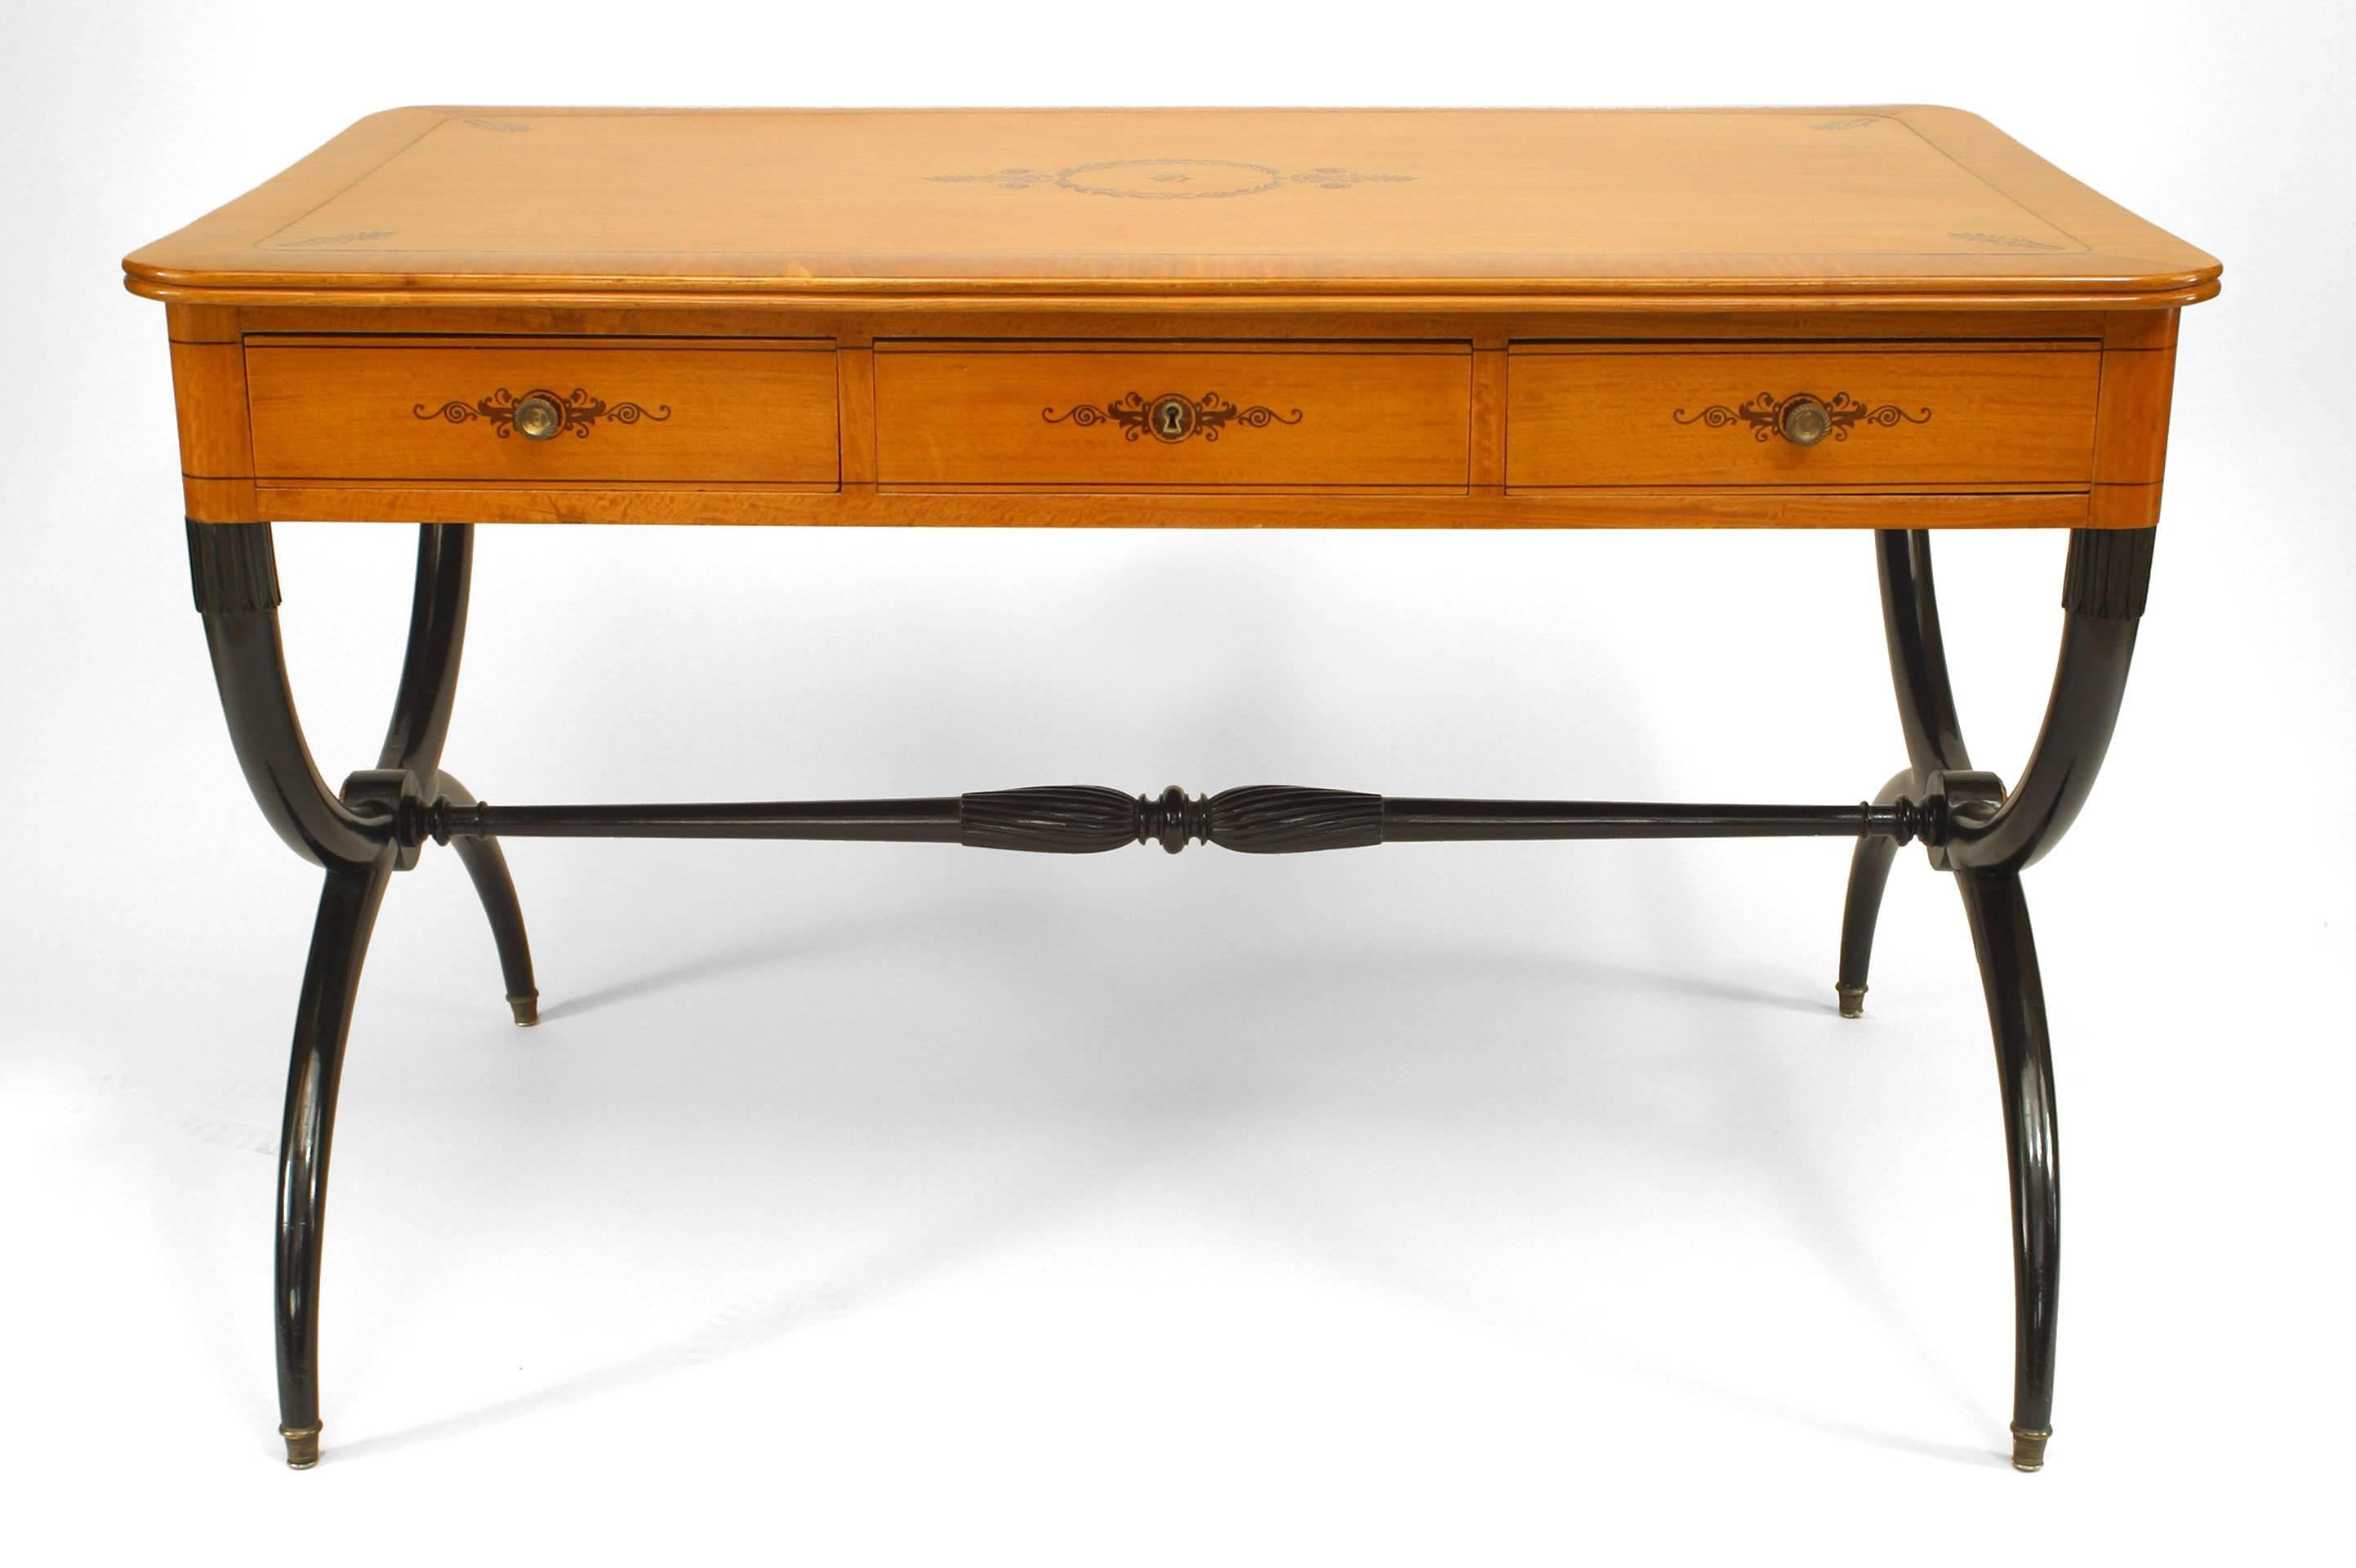 Bureau de table français Charles X en érable et marqueterie à pieds croisés avec 3 tiroirs.
